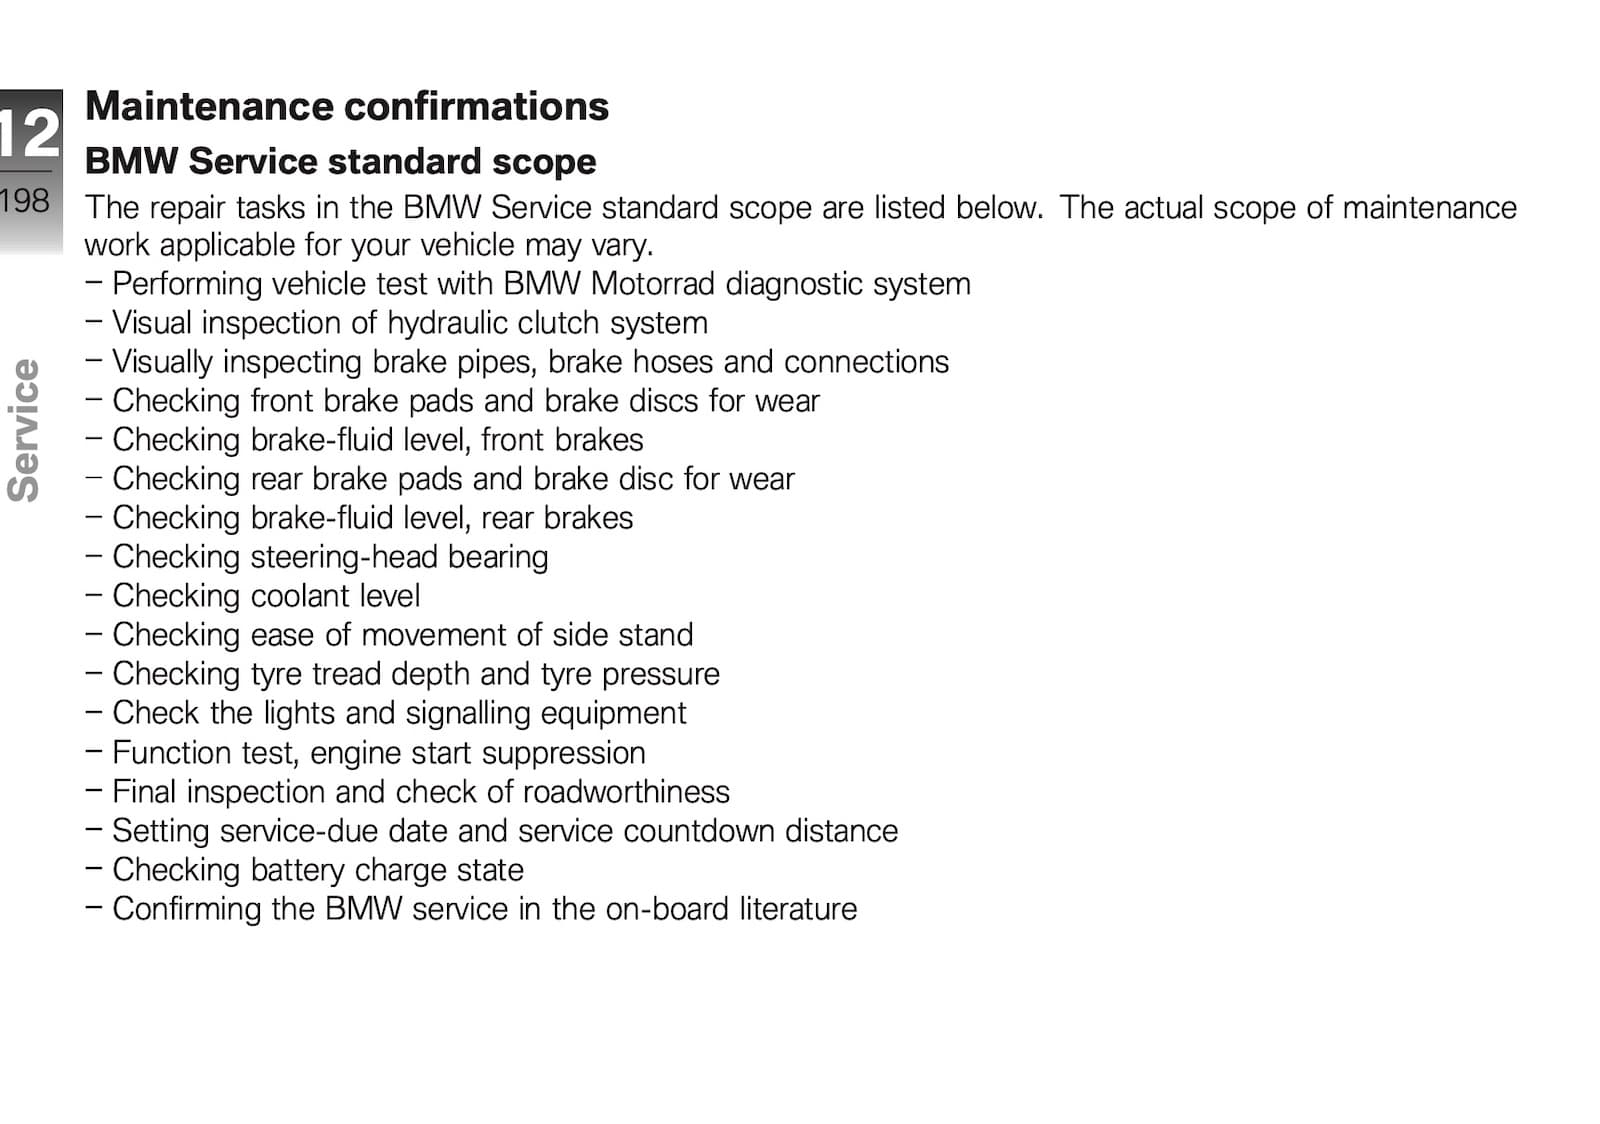 BMW R 1200 R maintenance schedule scope